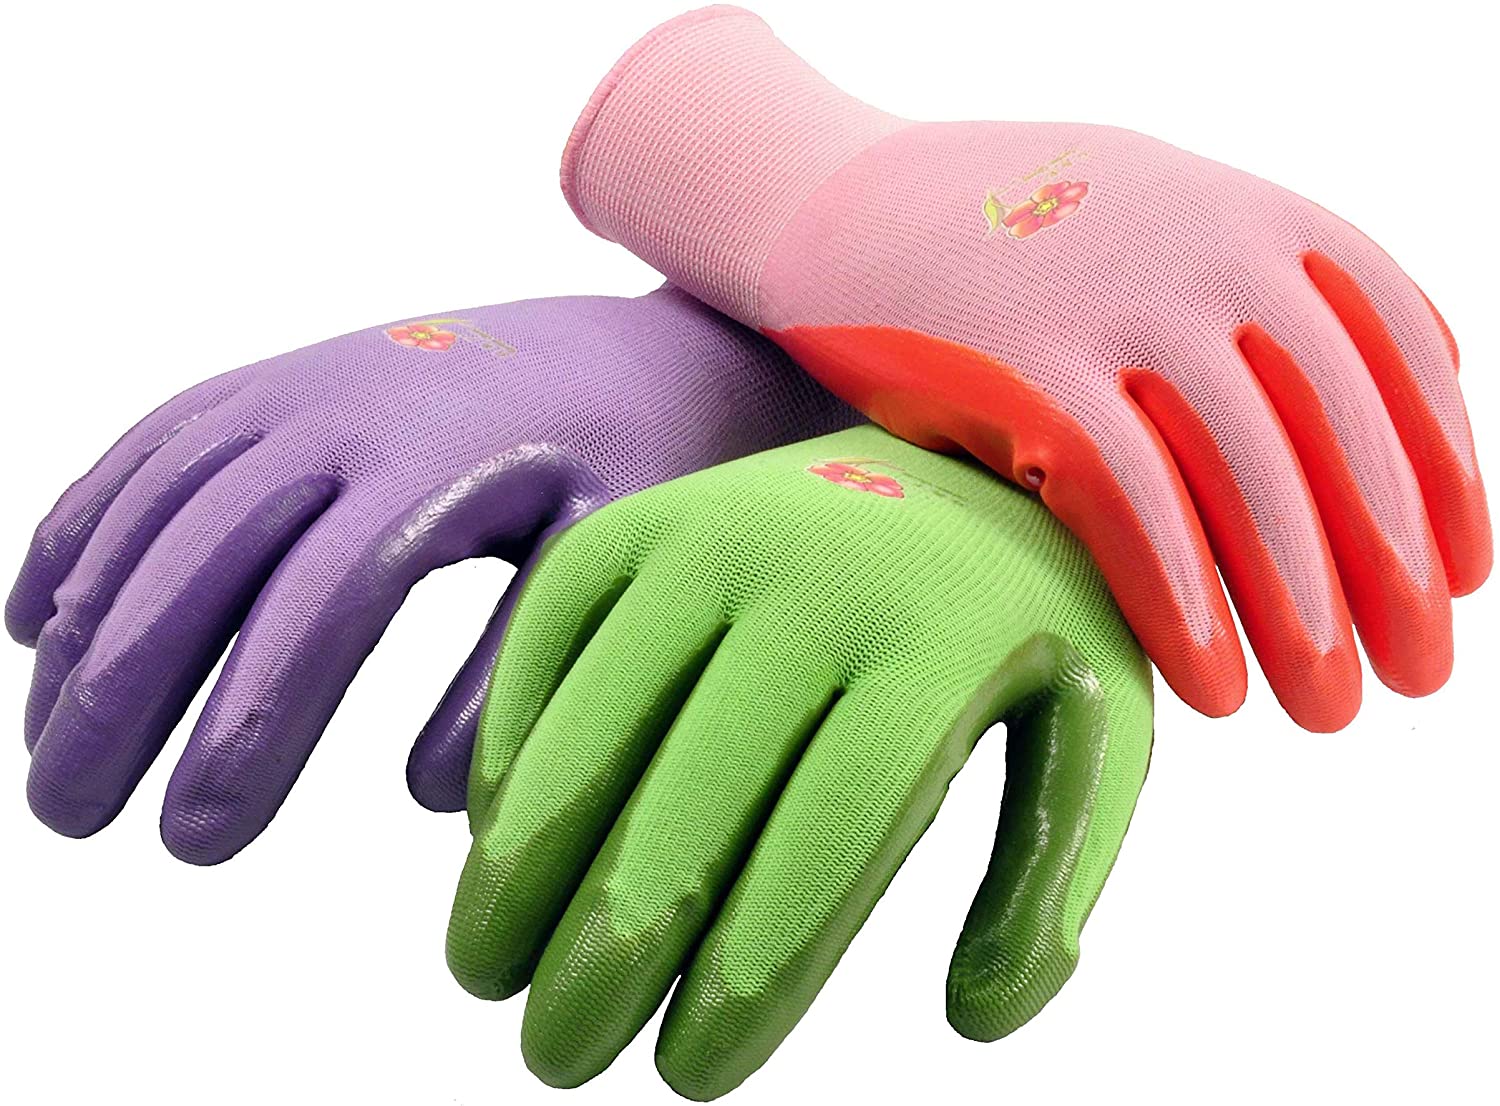 G & F Products Women’s Lightweight Gardening Gloves, 6-Pair